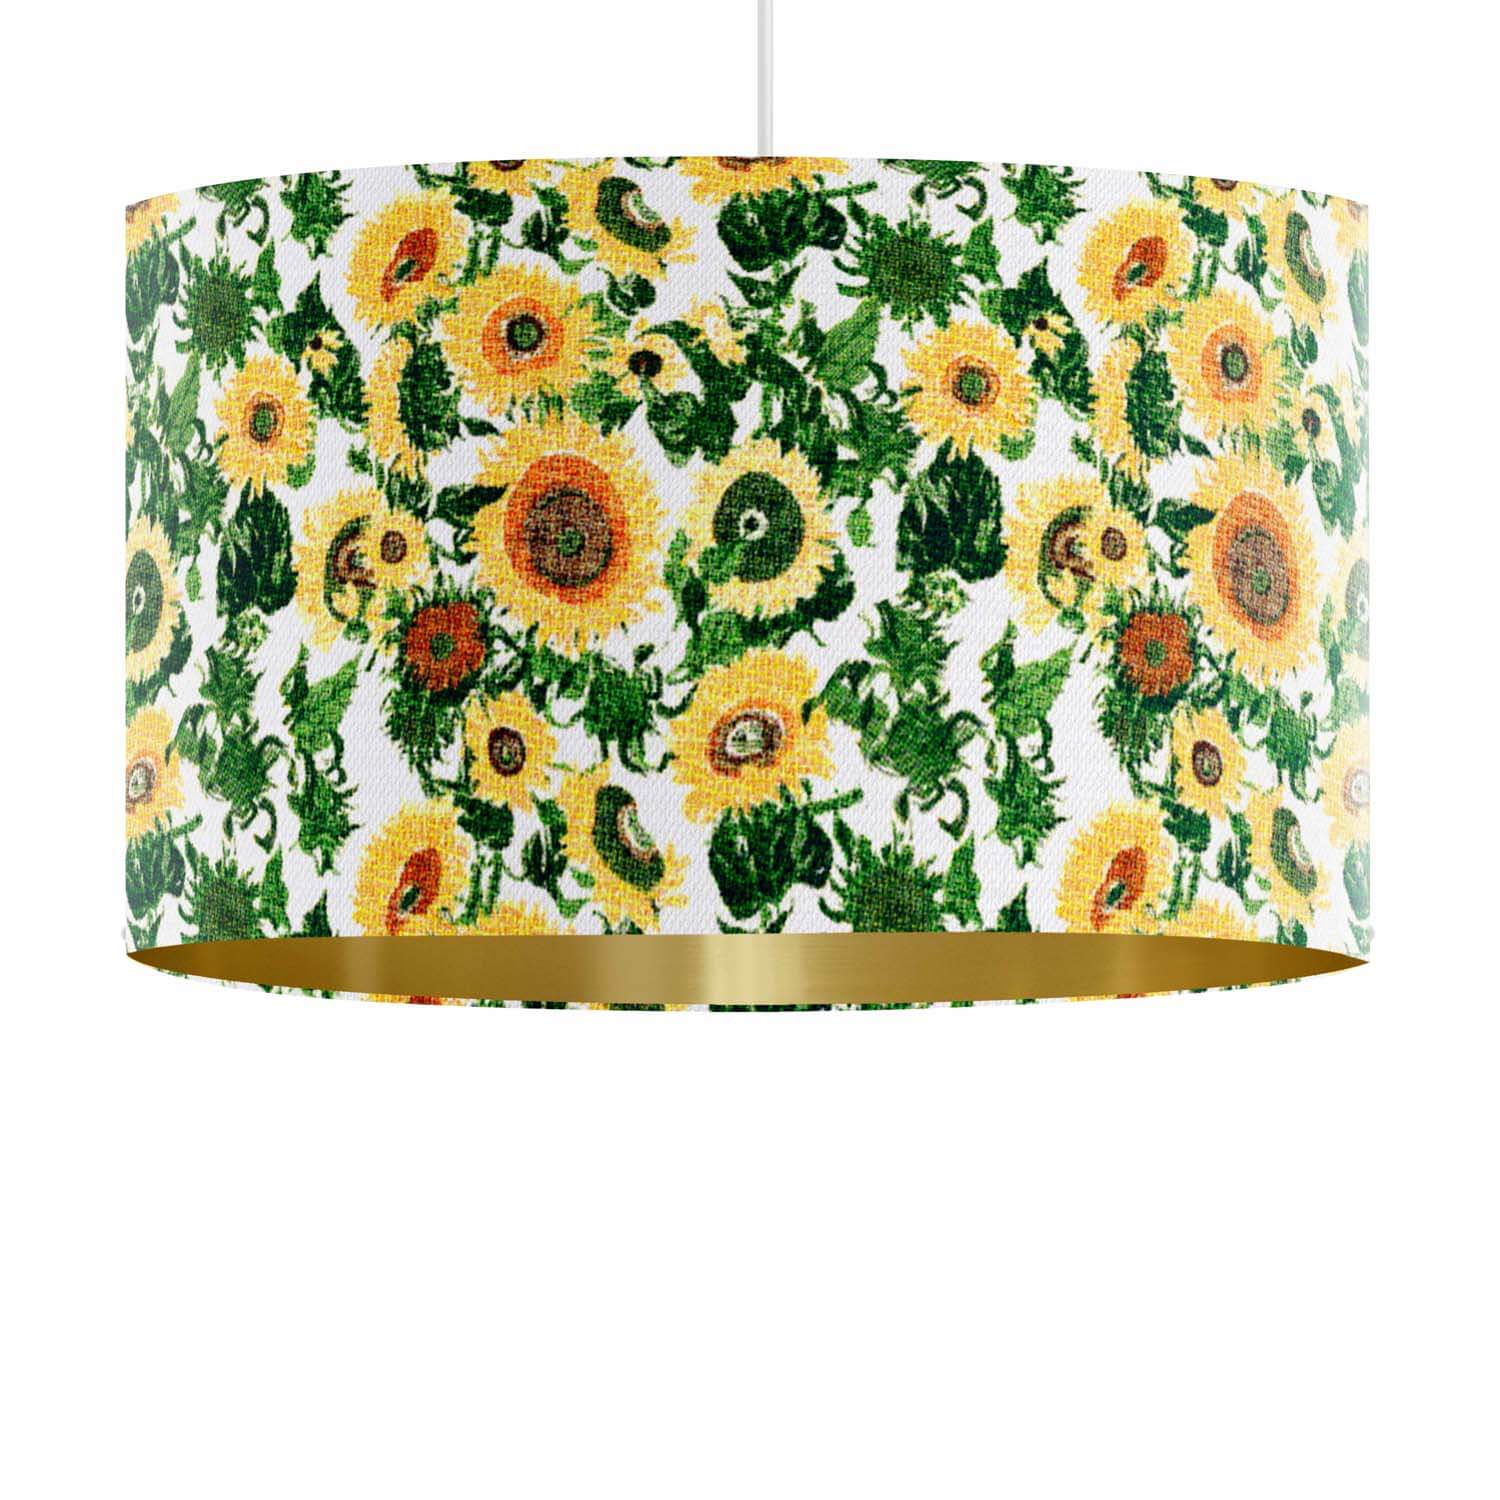 Sunflowers - Art Cushions Lampshade